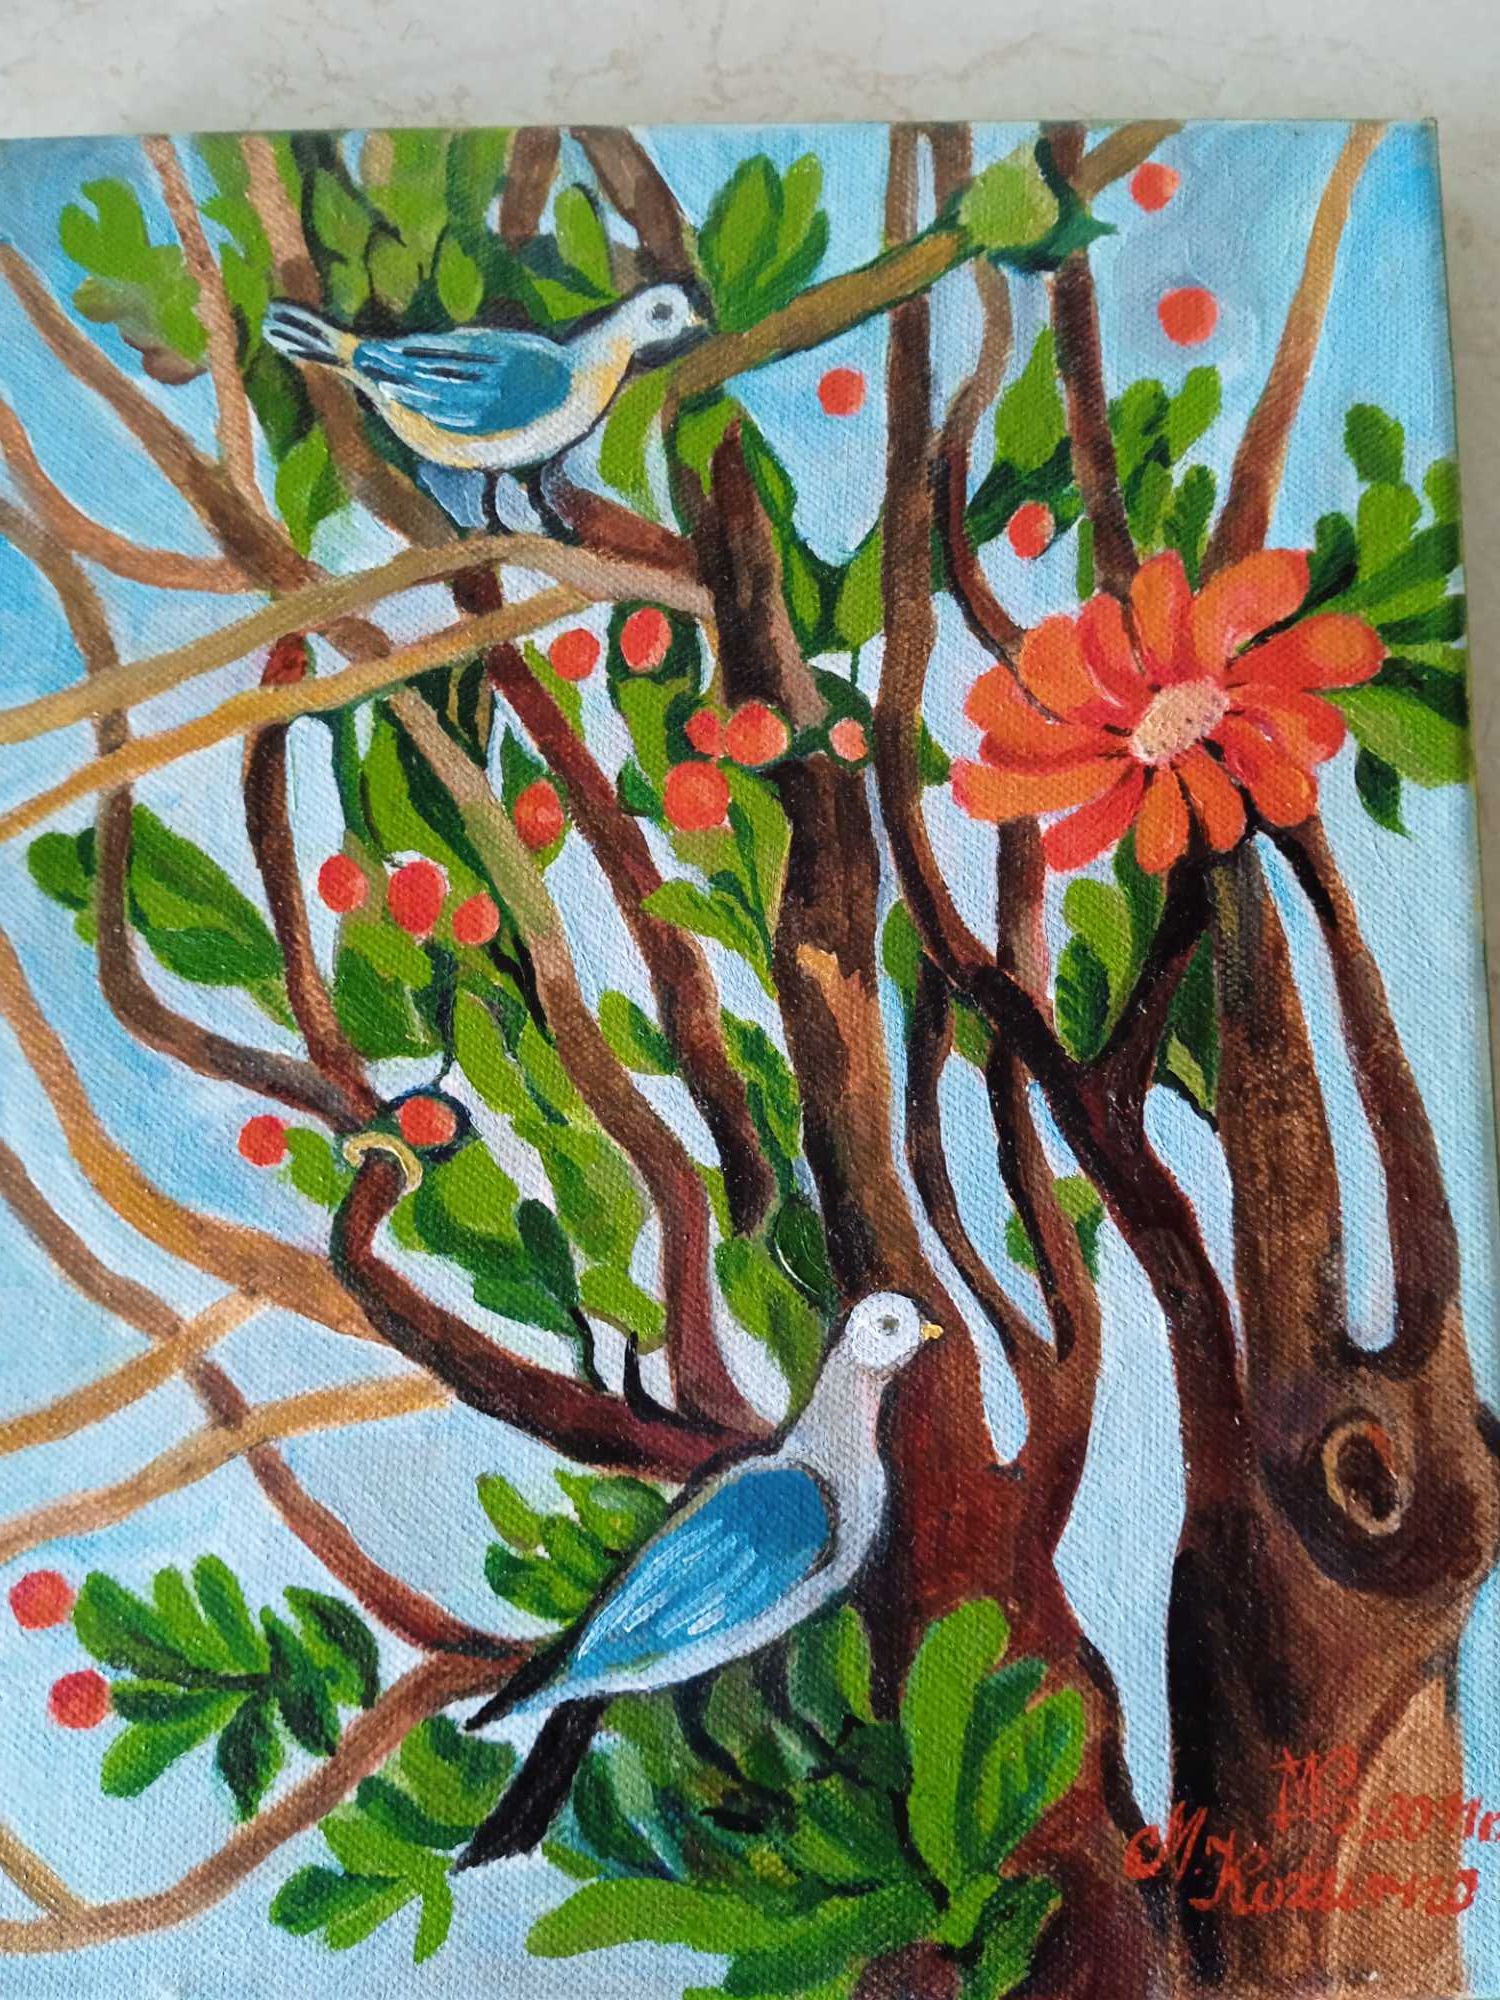 Ptaki i drzewa- obraz ręcznie malowany, unikatowy.